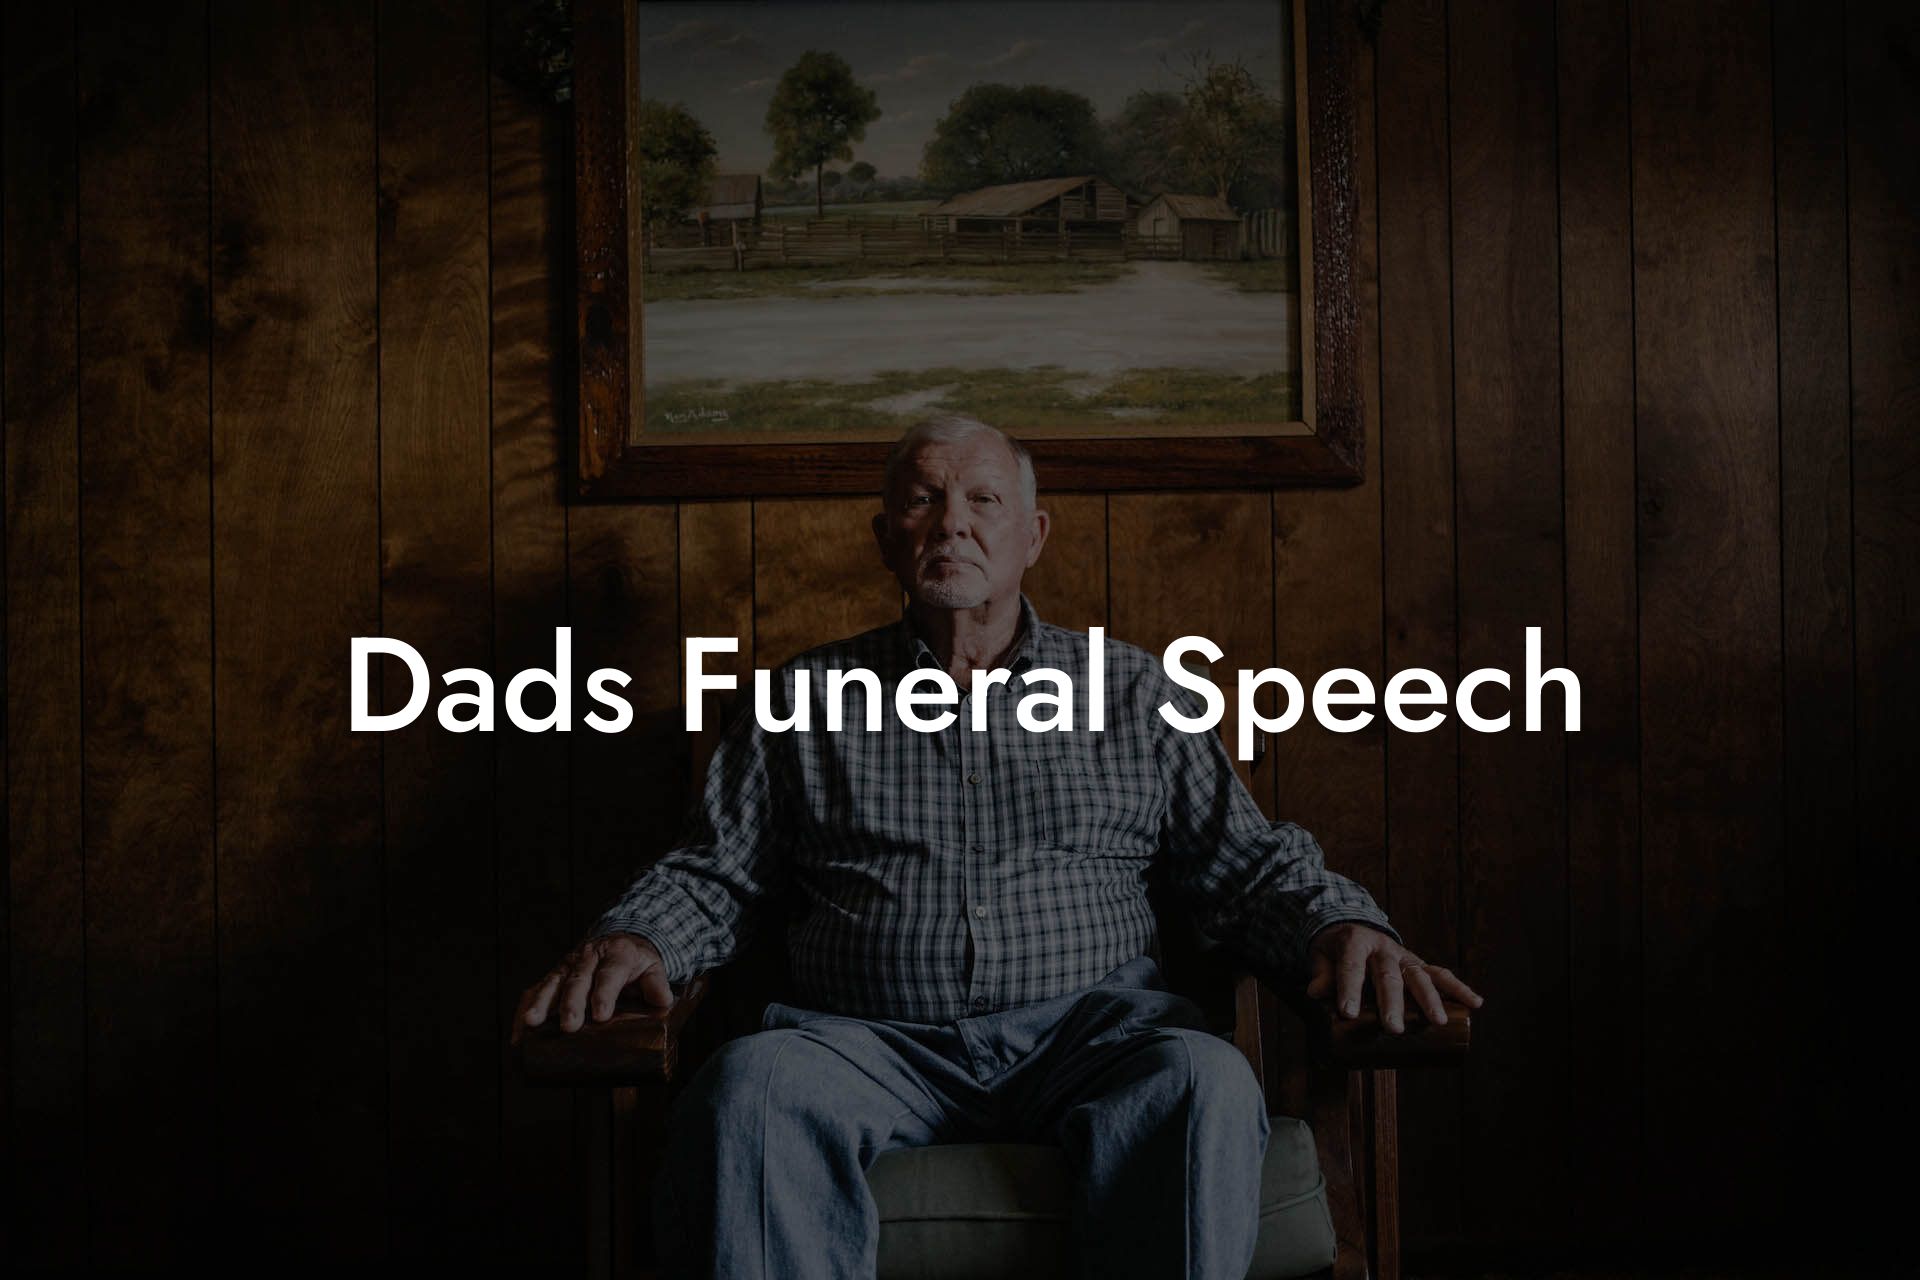 Dads Funeral Speech